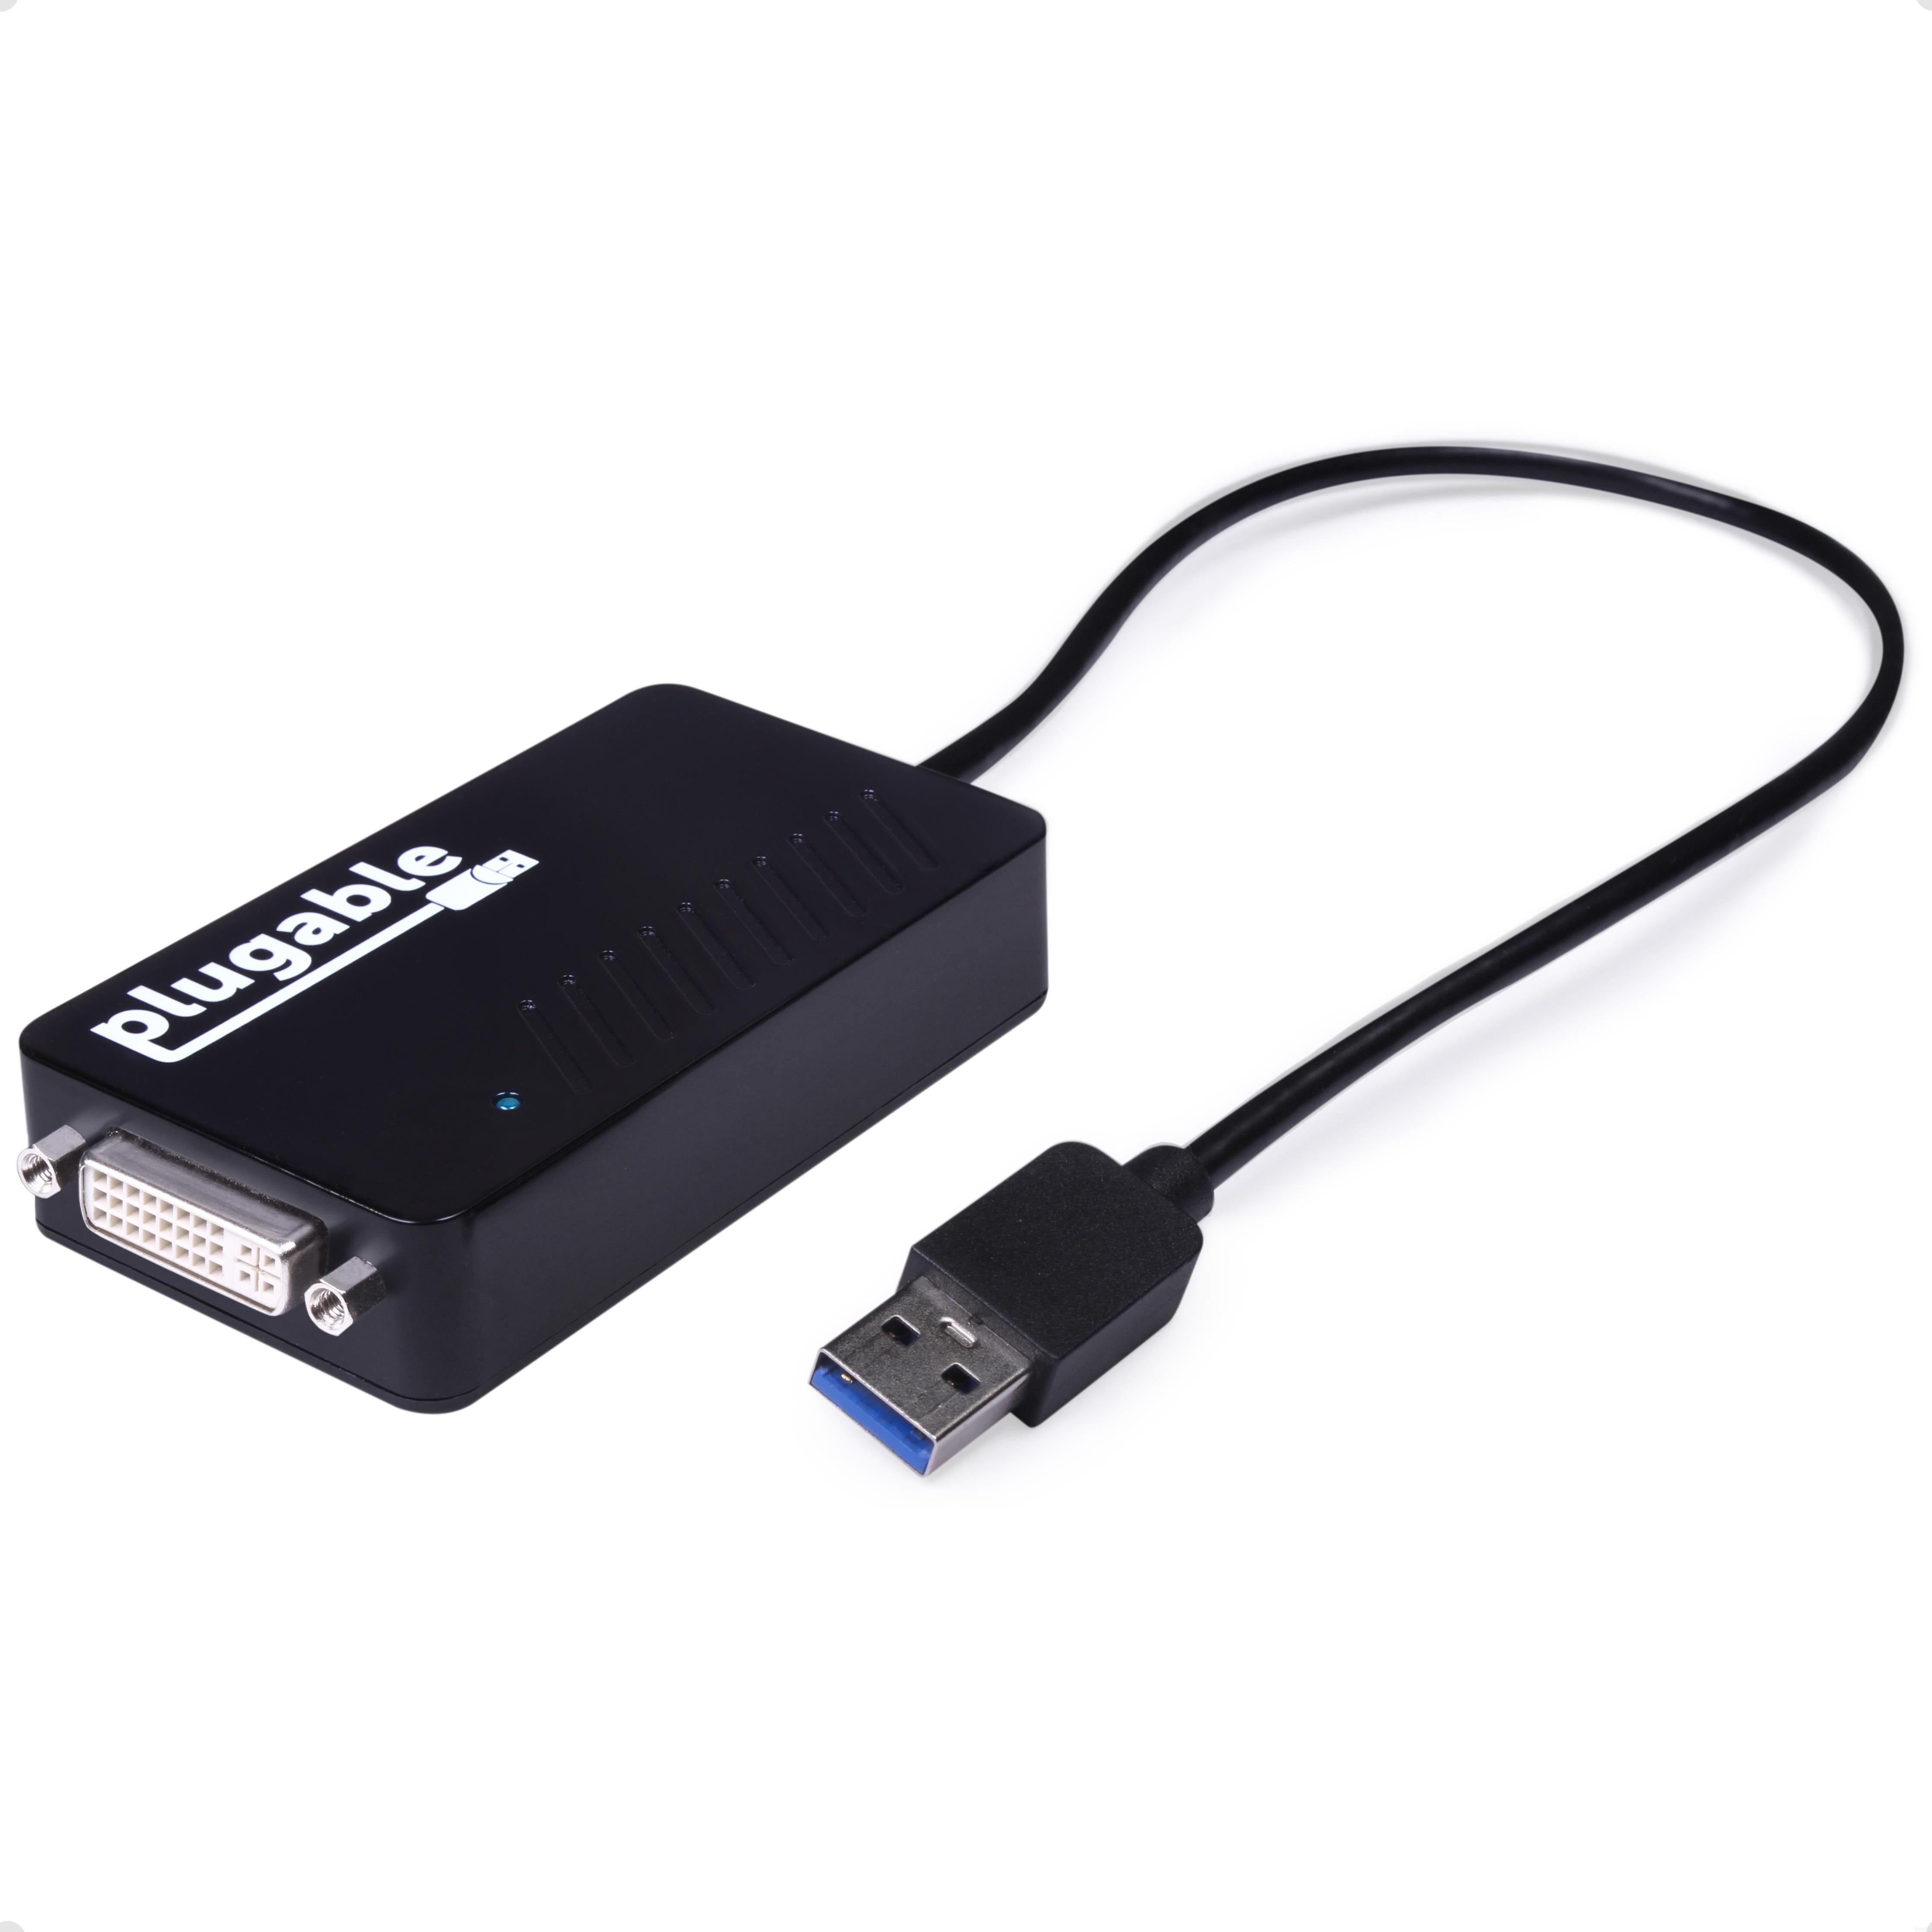 Plugable USB 3.0 HDMI/DVI/VGA Adapter Multiple Monitors – Plugable Technologies